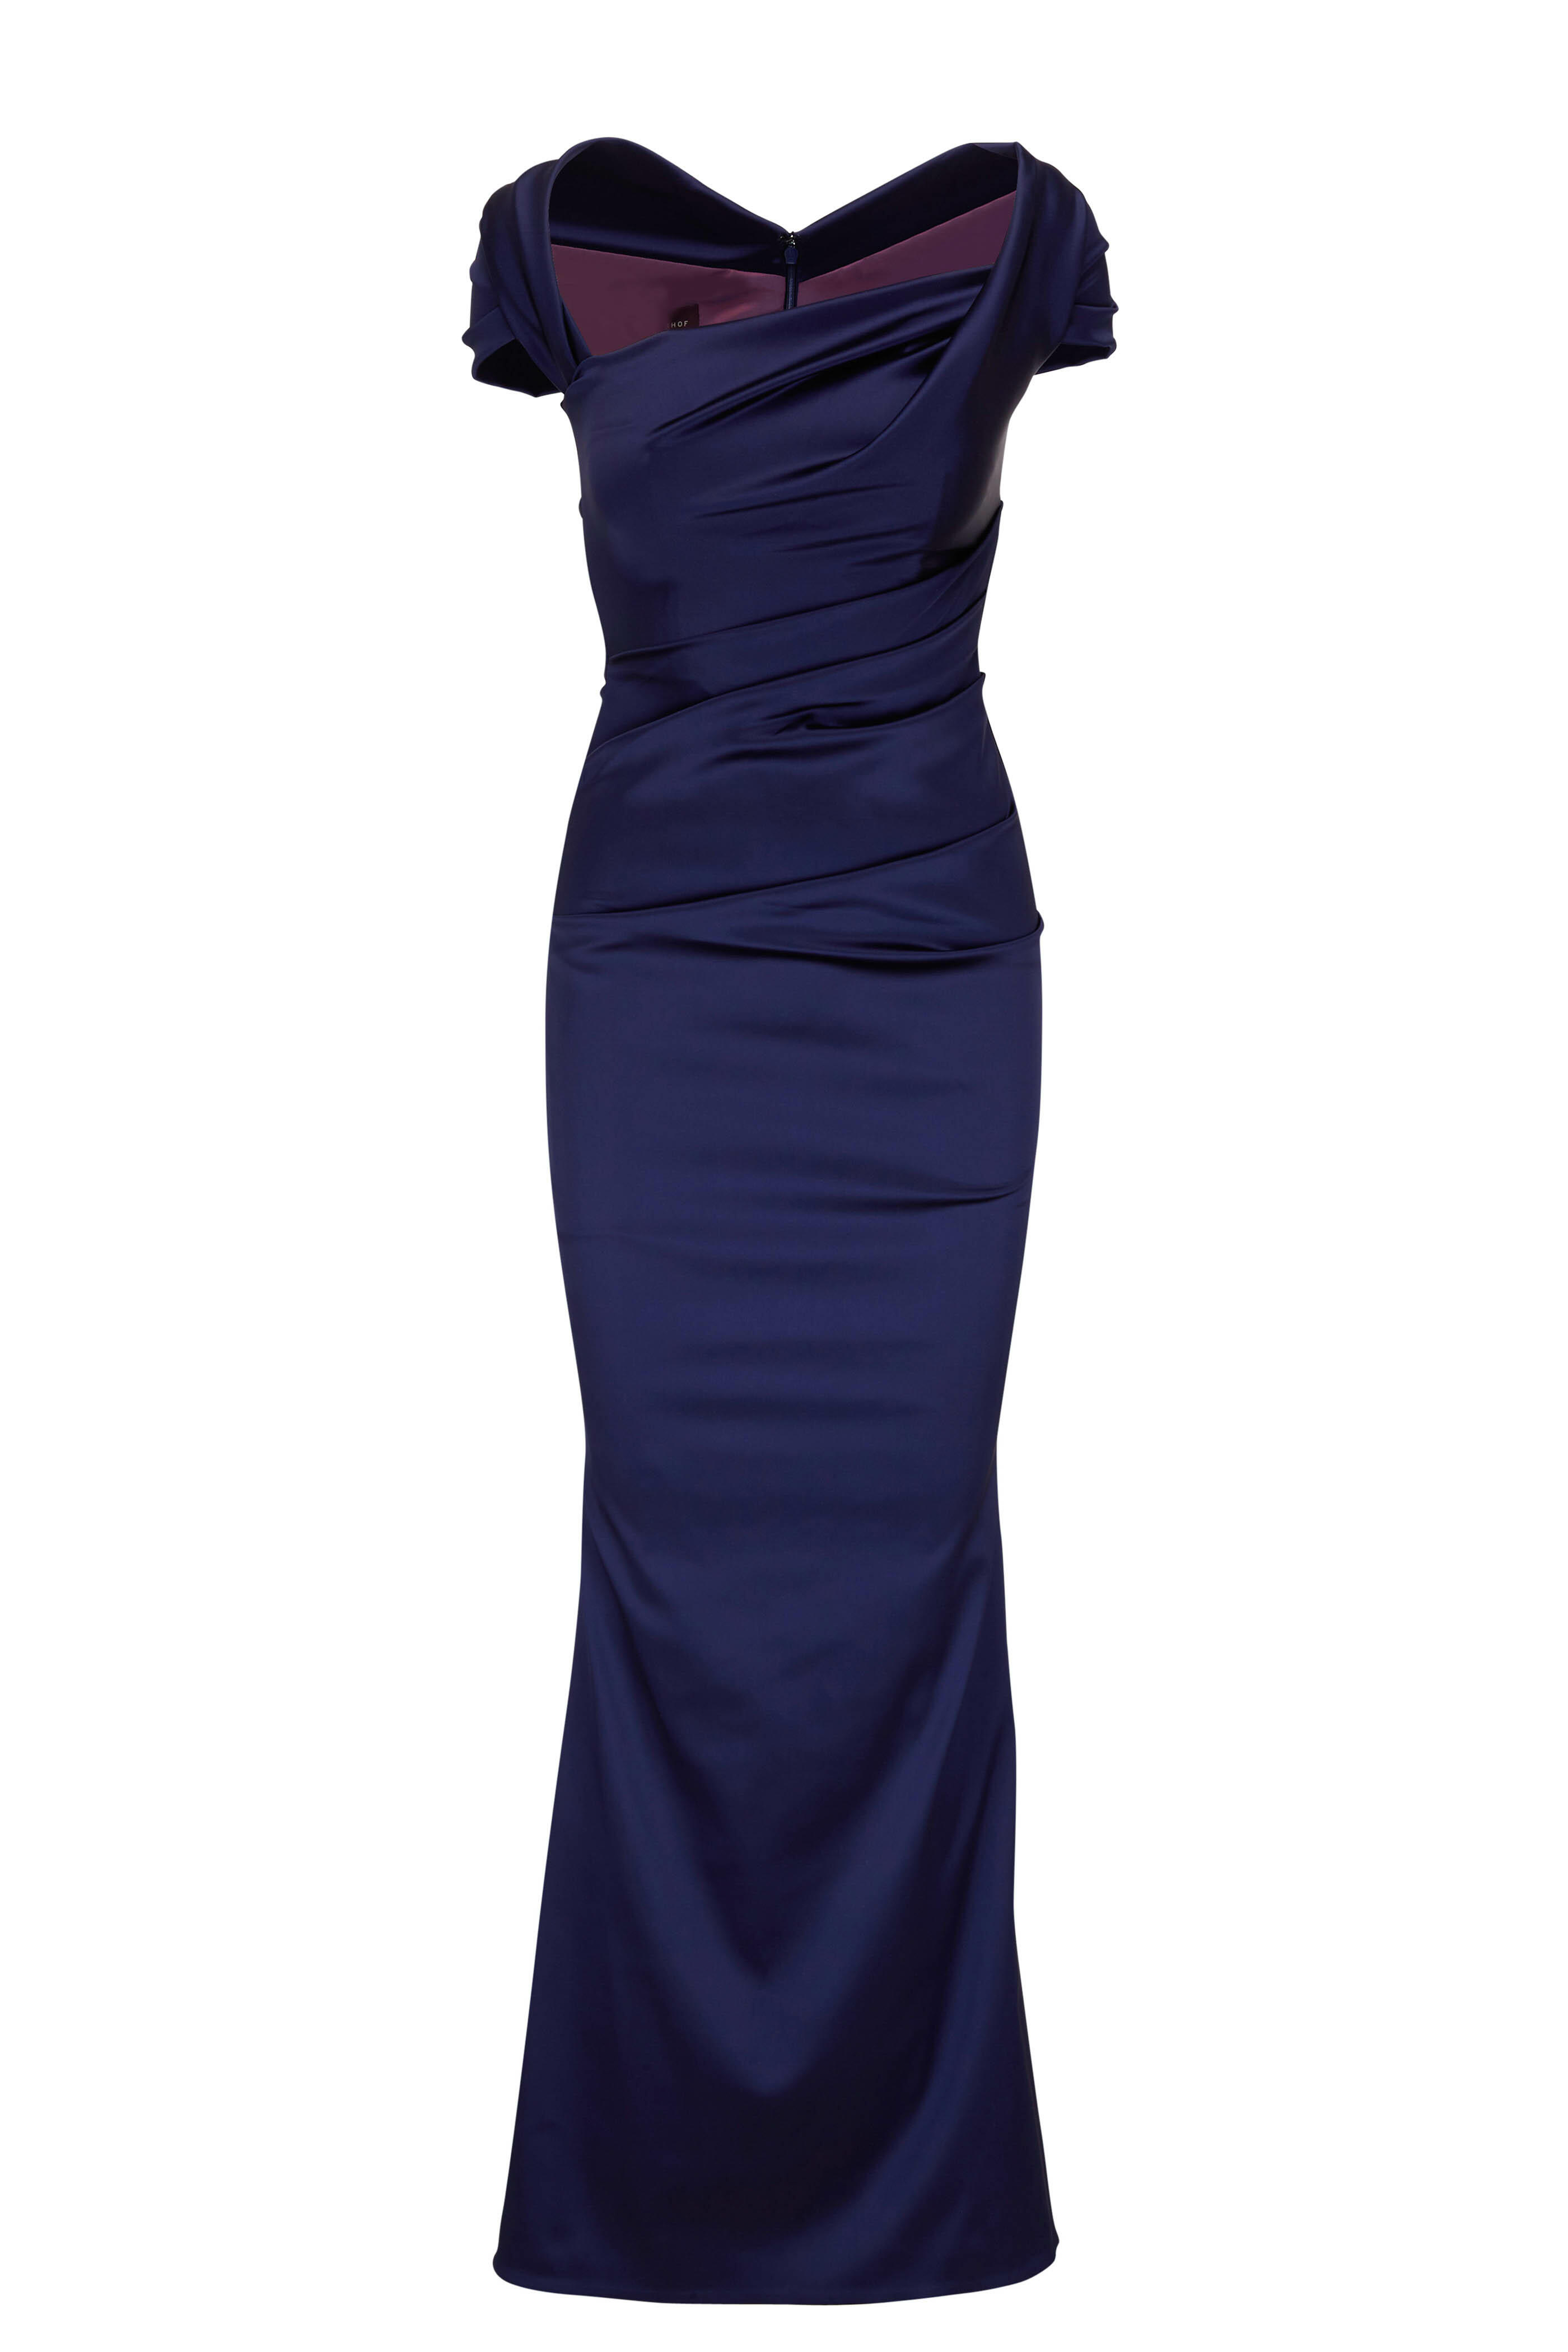 Talbot Runhof - Donavan4 Navy Blue Stretch Satin Duchesse Gown